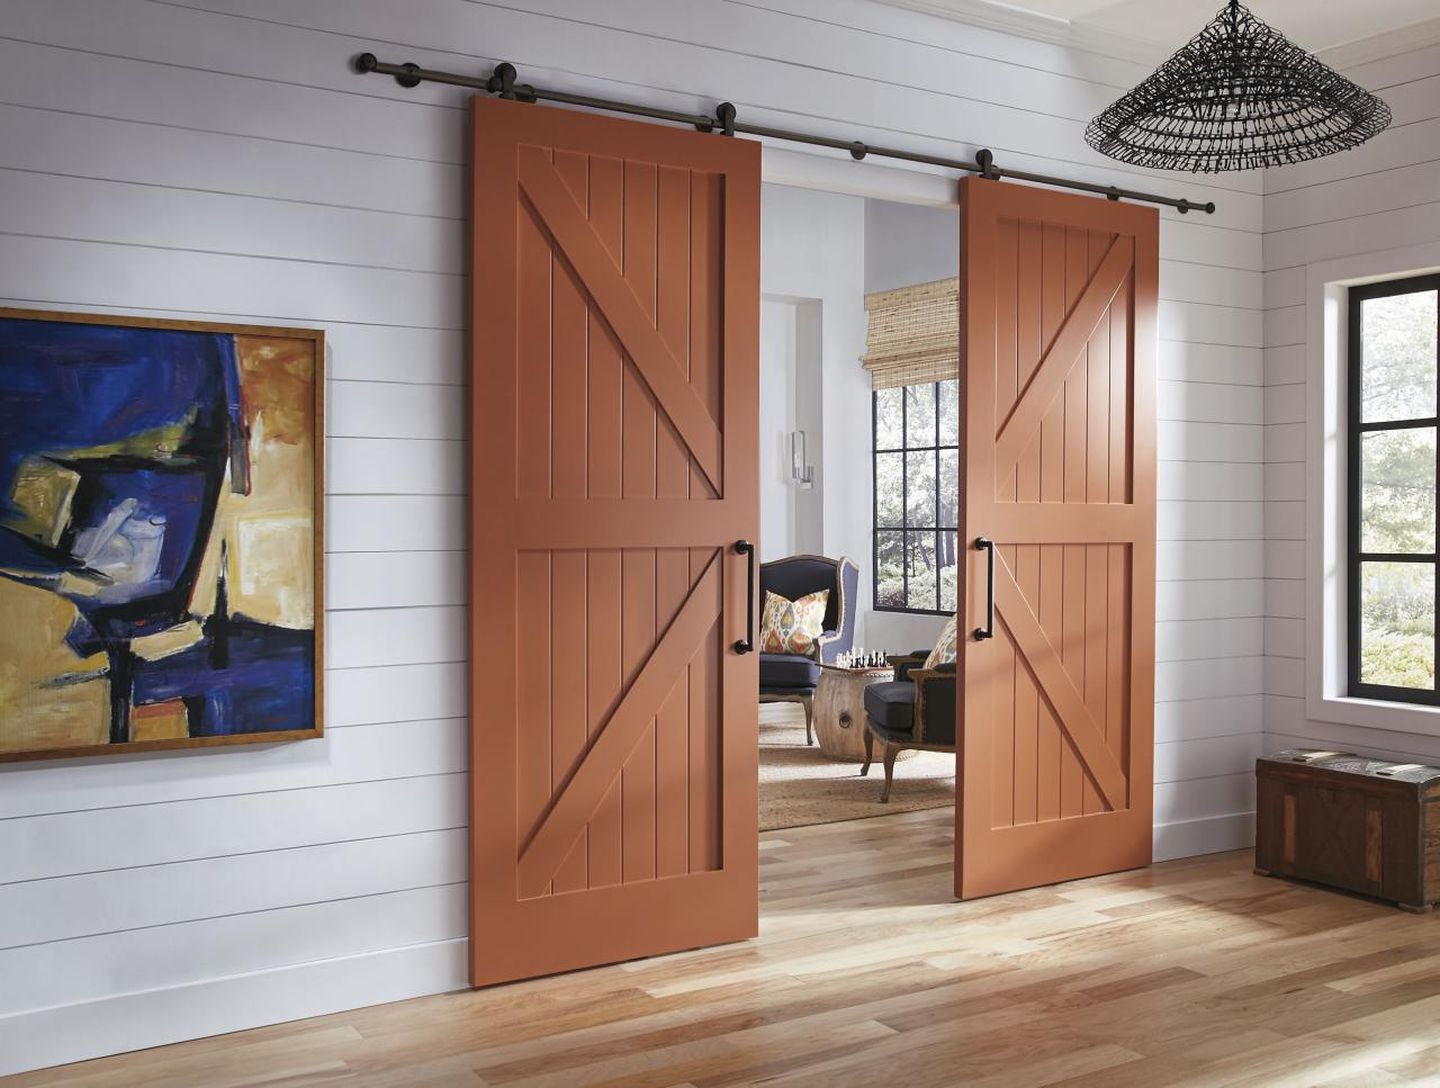 Model pintu minimalis dari kayu sliding membuat penggunaan ruang lebih efisien.